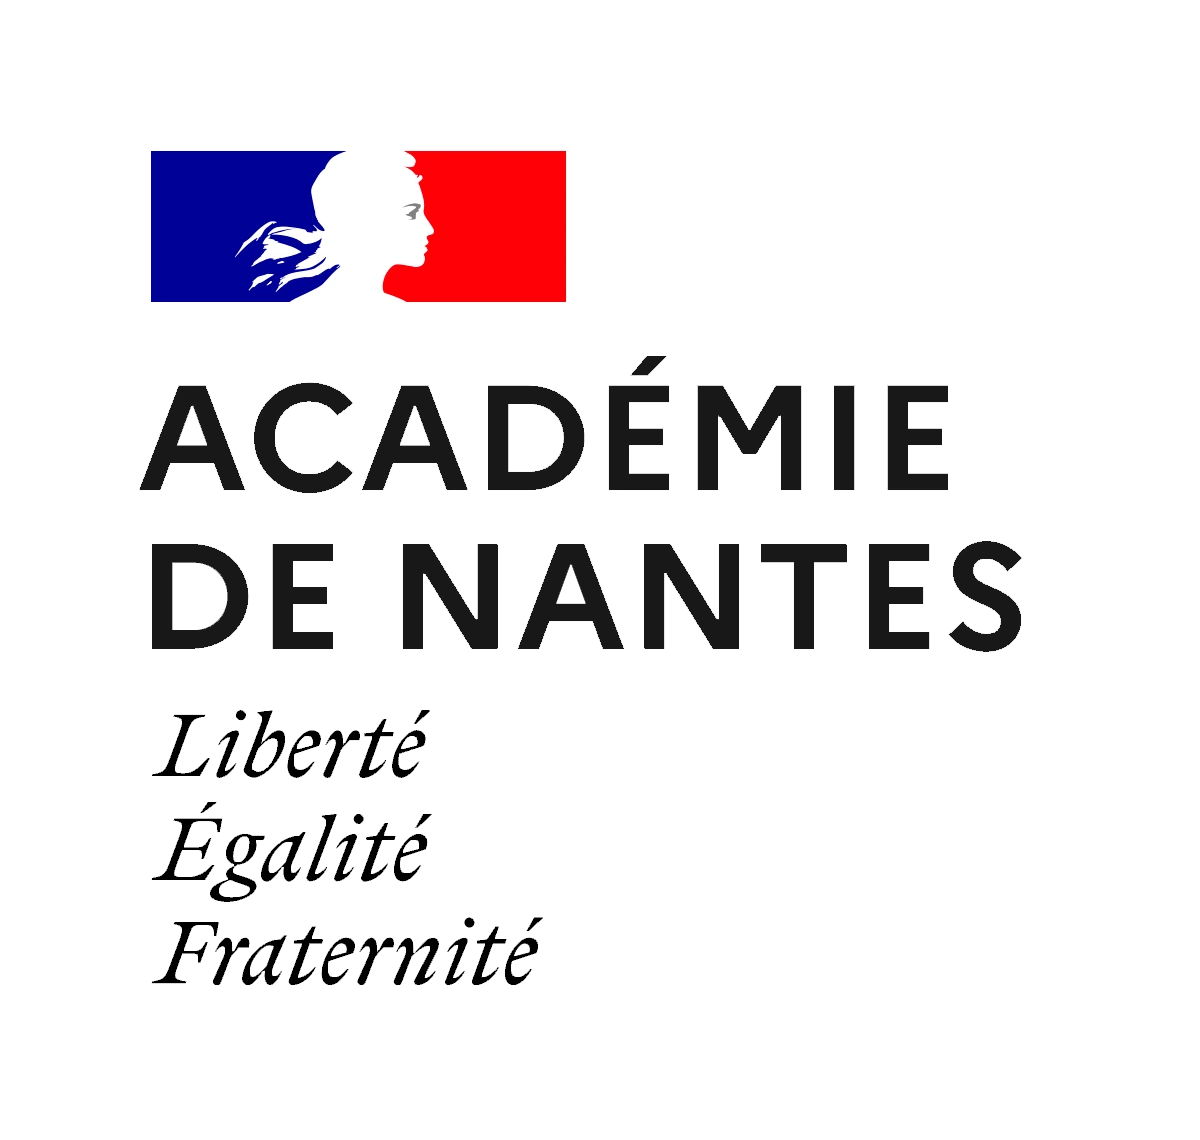 Académie de Nantes